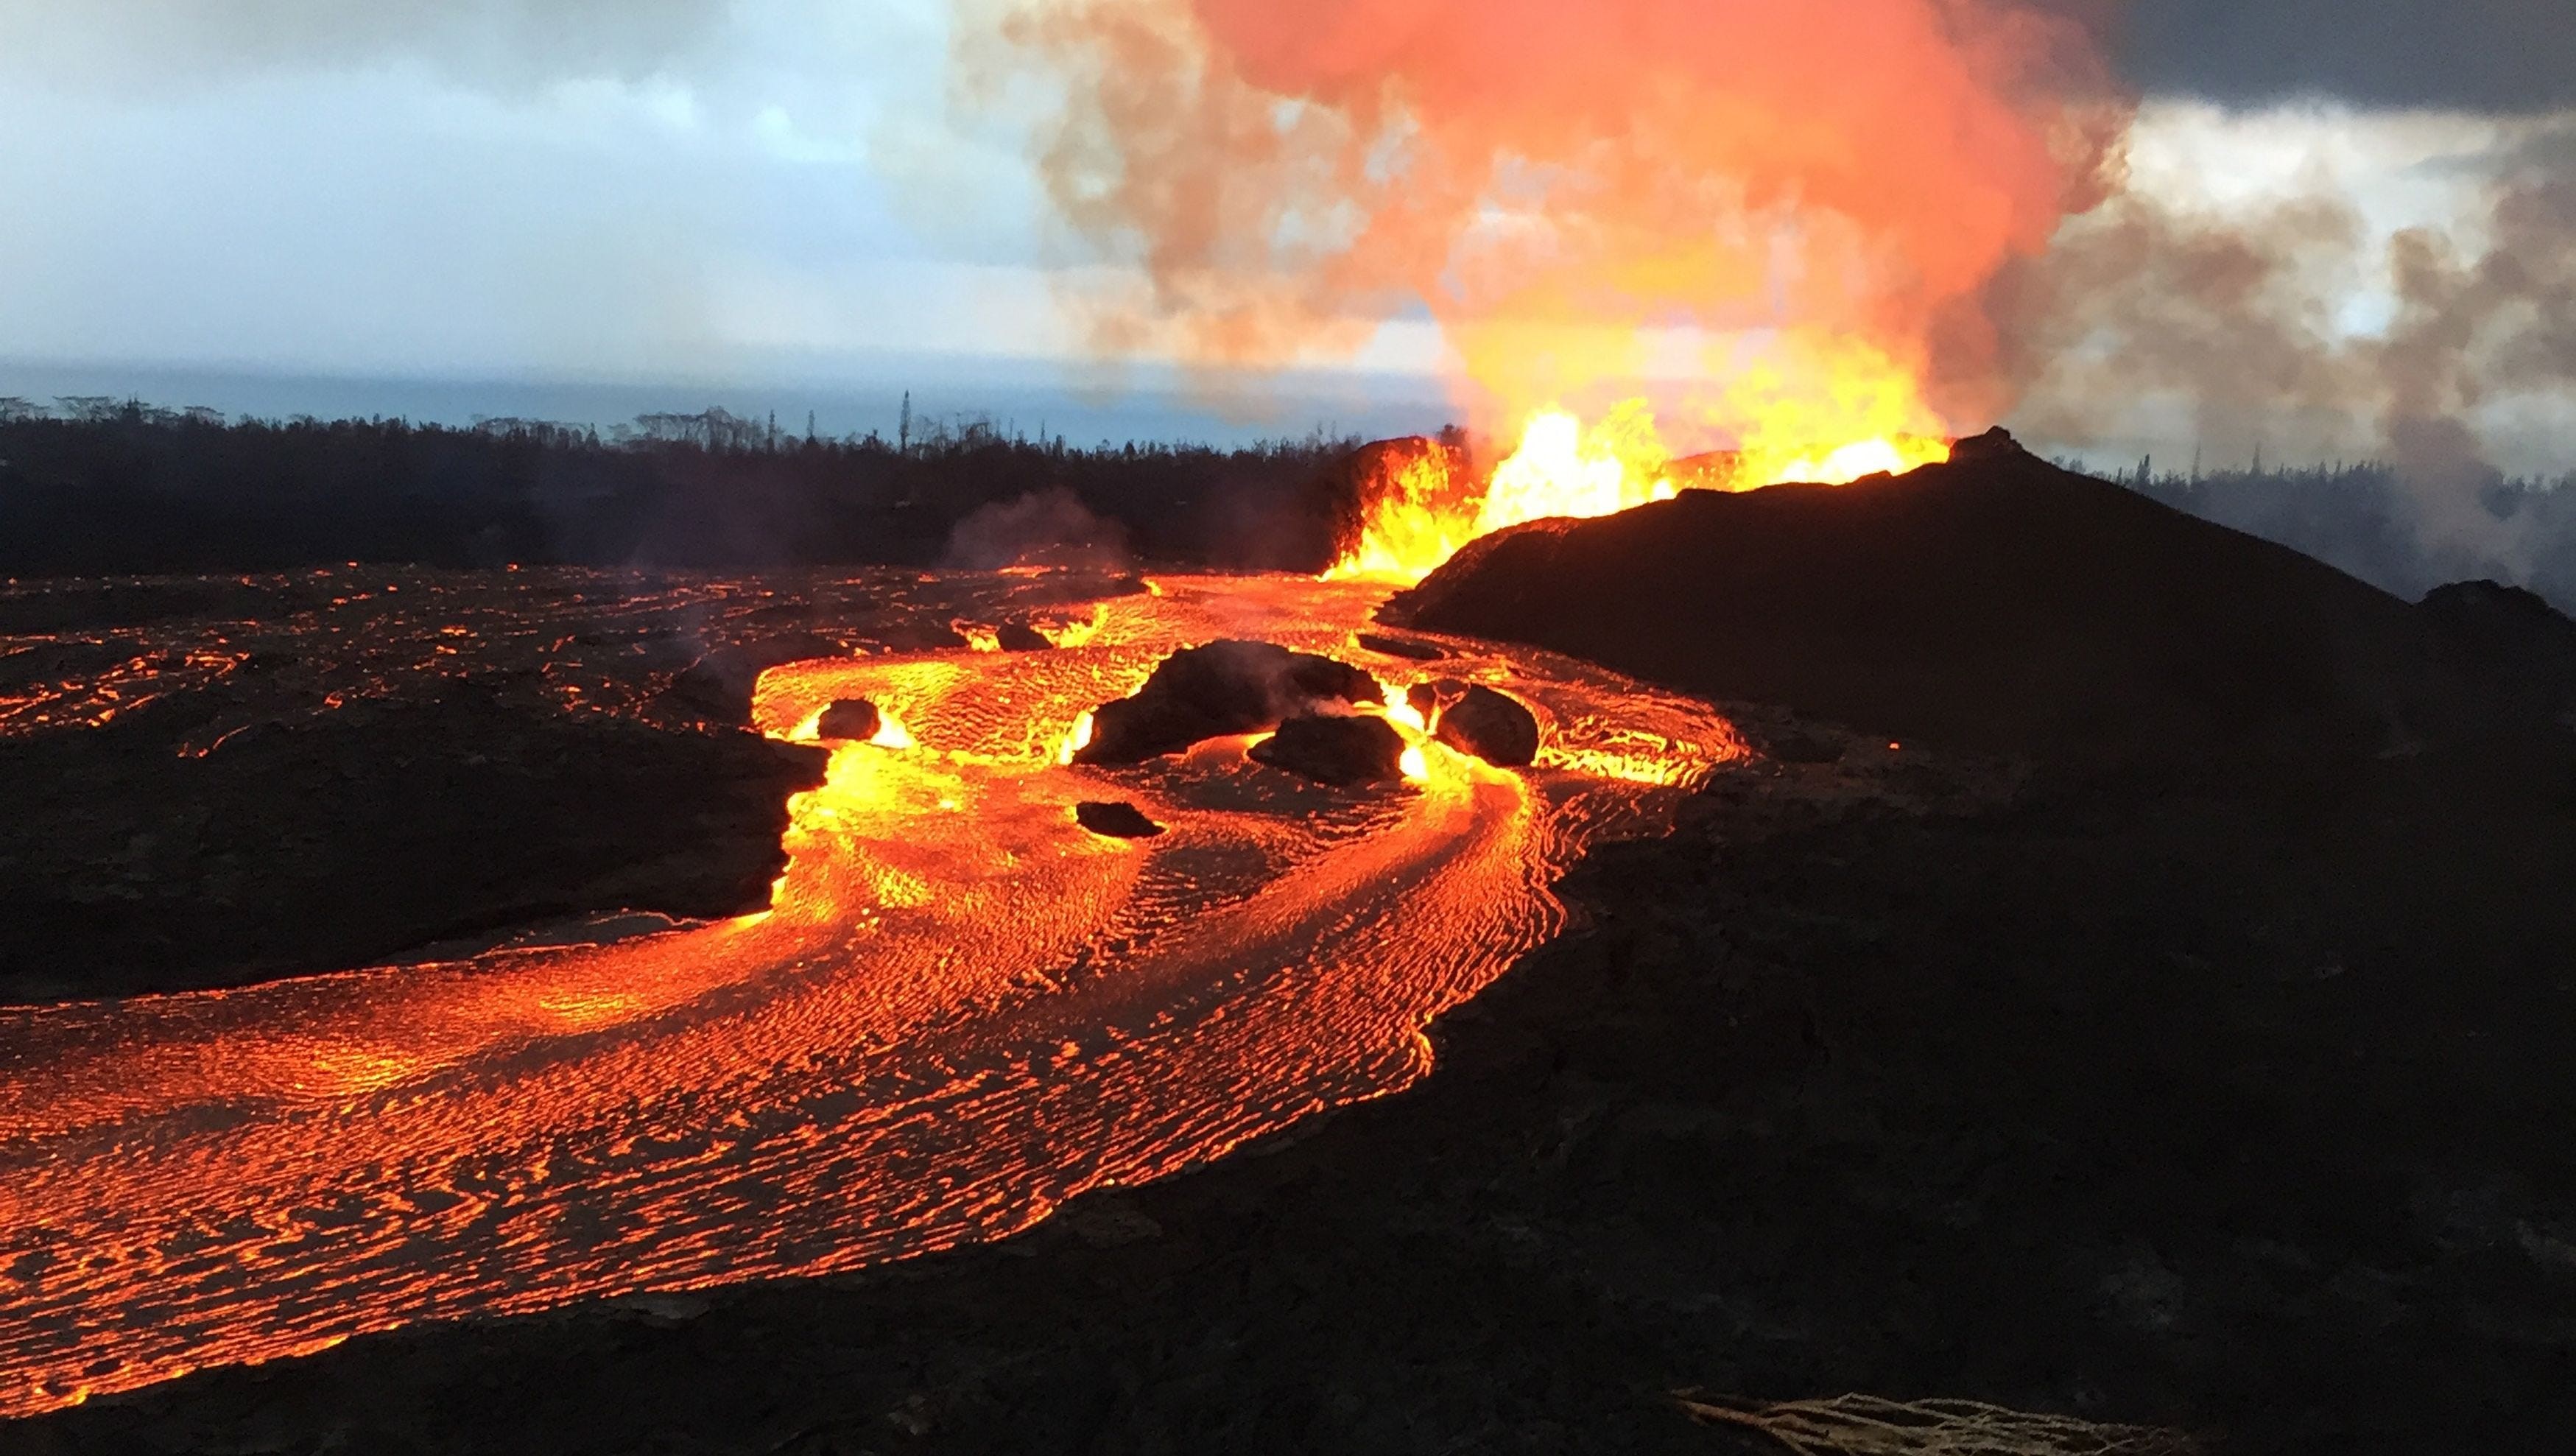 “Dünya’nın en büyük kalkan volkanı” unvanı el değiştirdi! Yeni şampiyon yine Hawaii’den